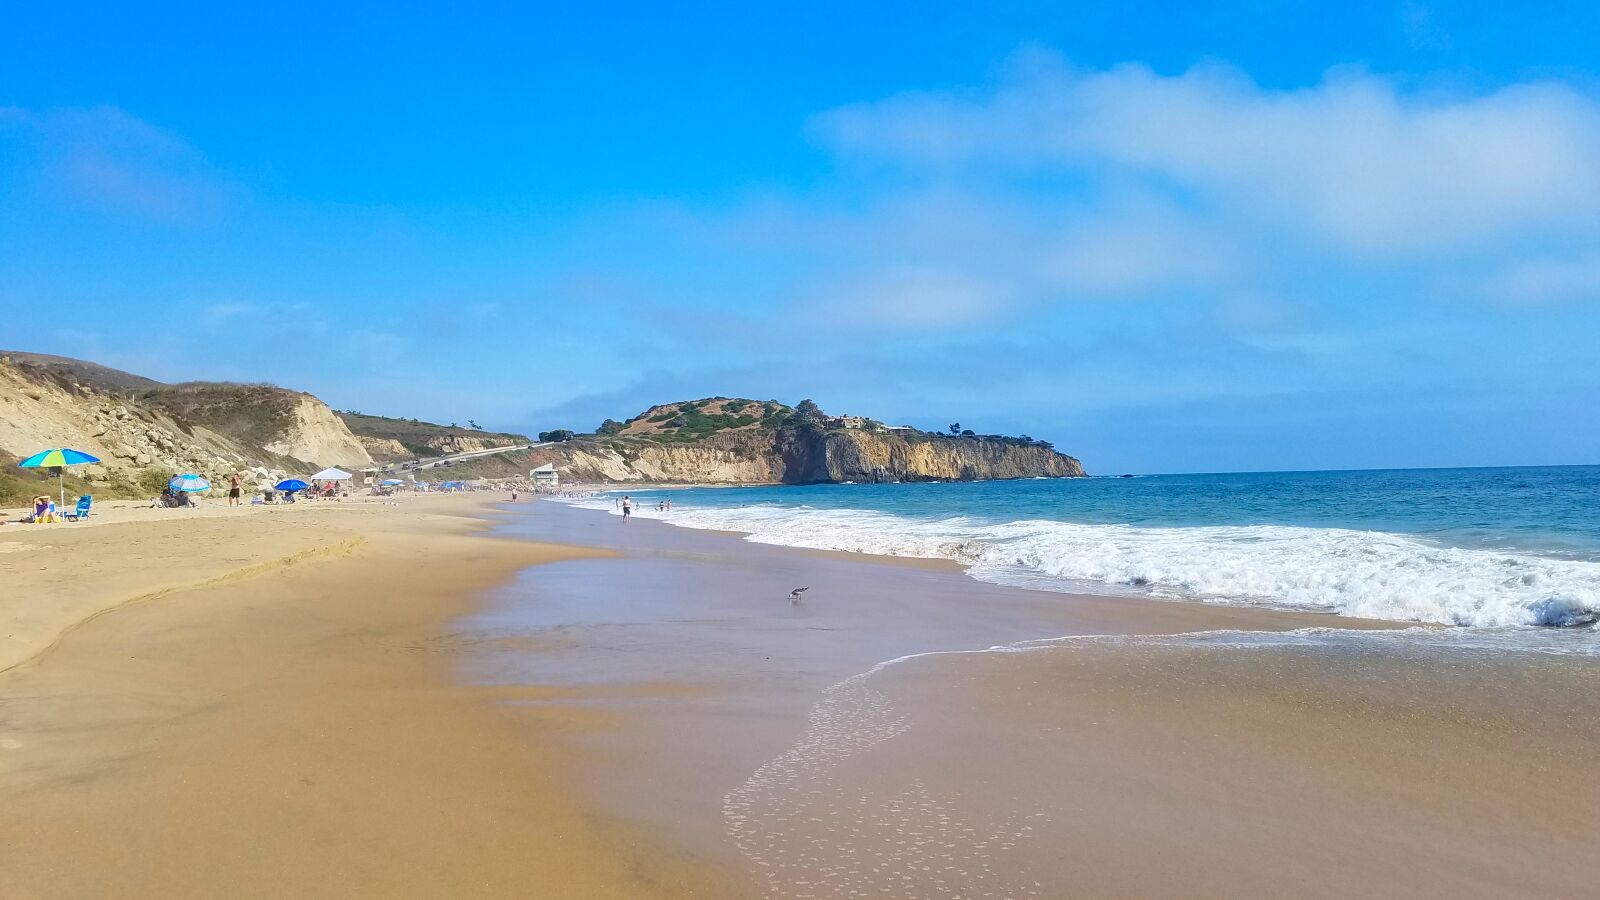 Samsung Galaxy S7 Edge sample photo. Ocean, beach, dana point photography